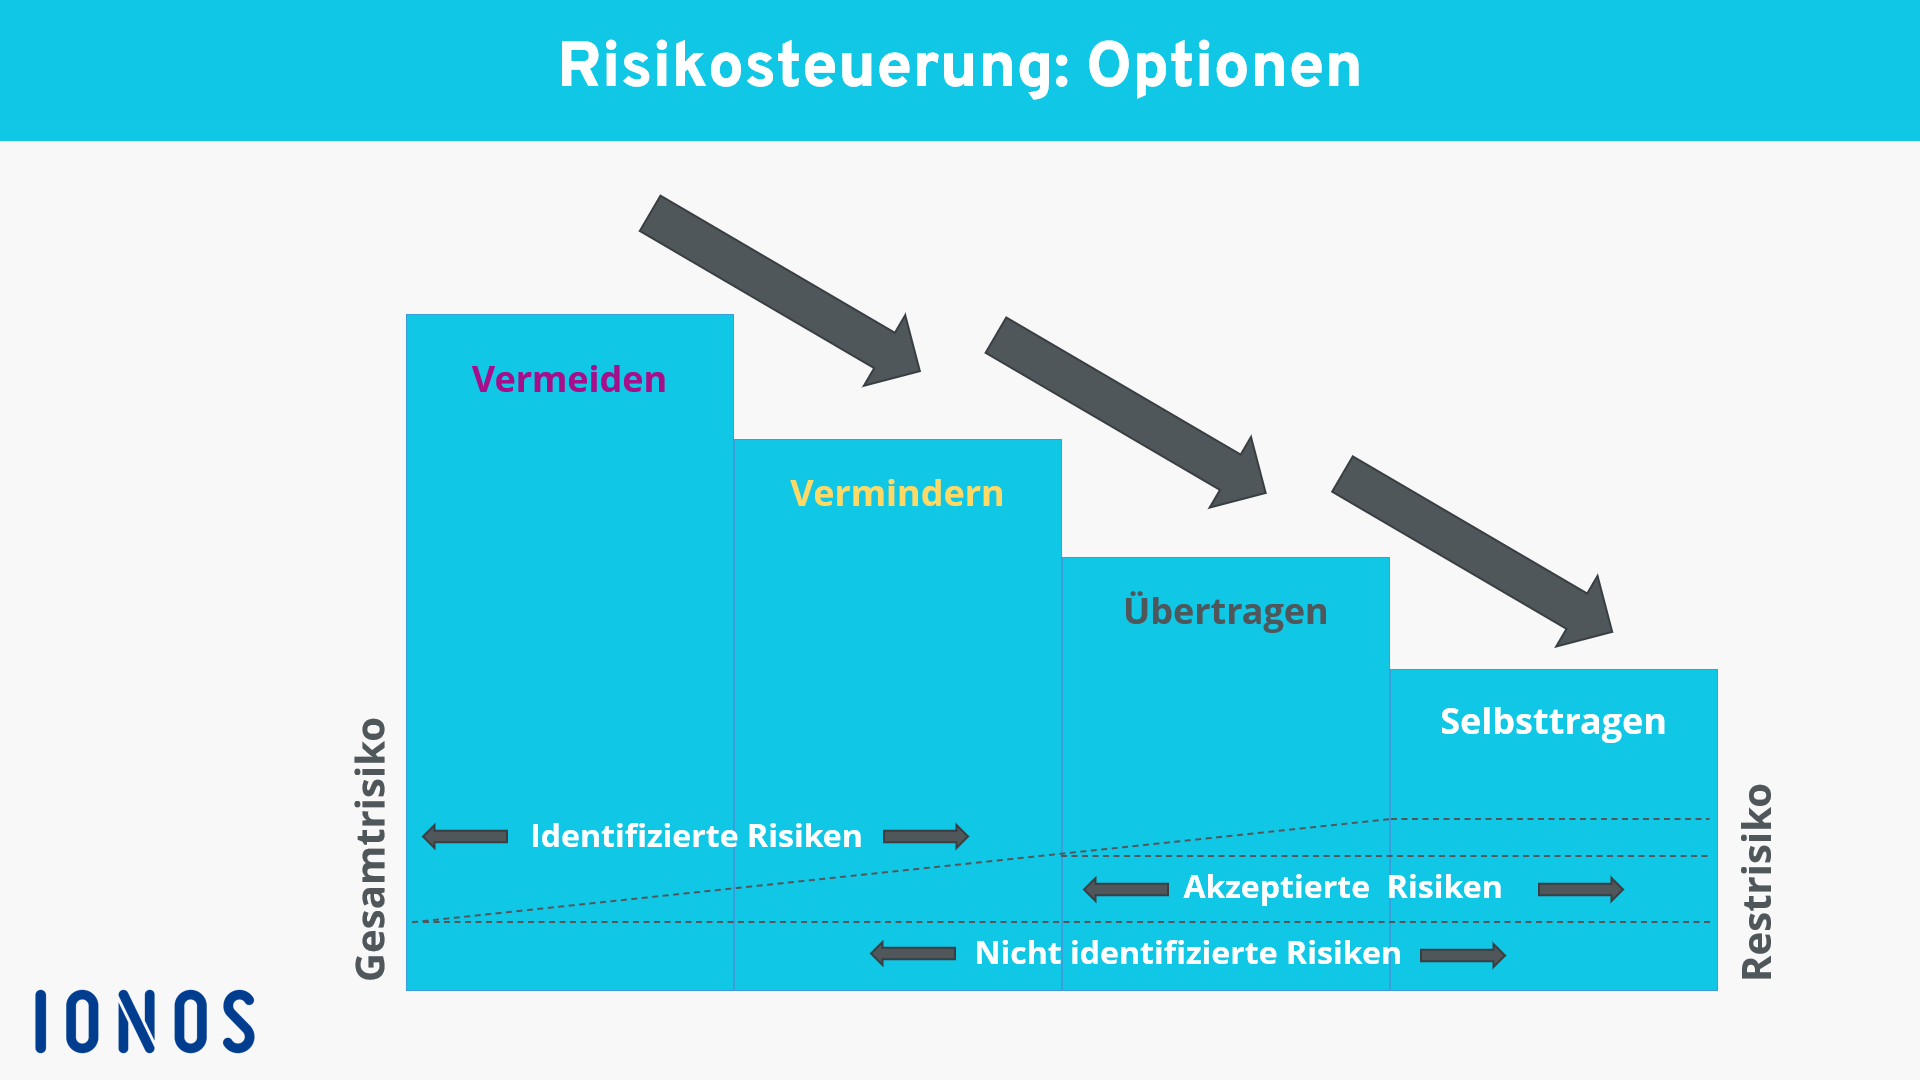 Schaubild zu den Optionen der Risikosteuerung